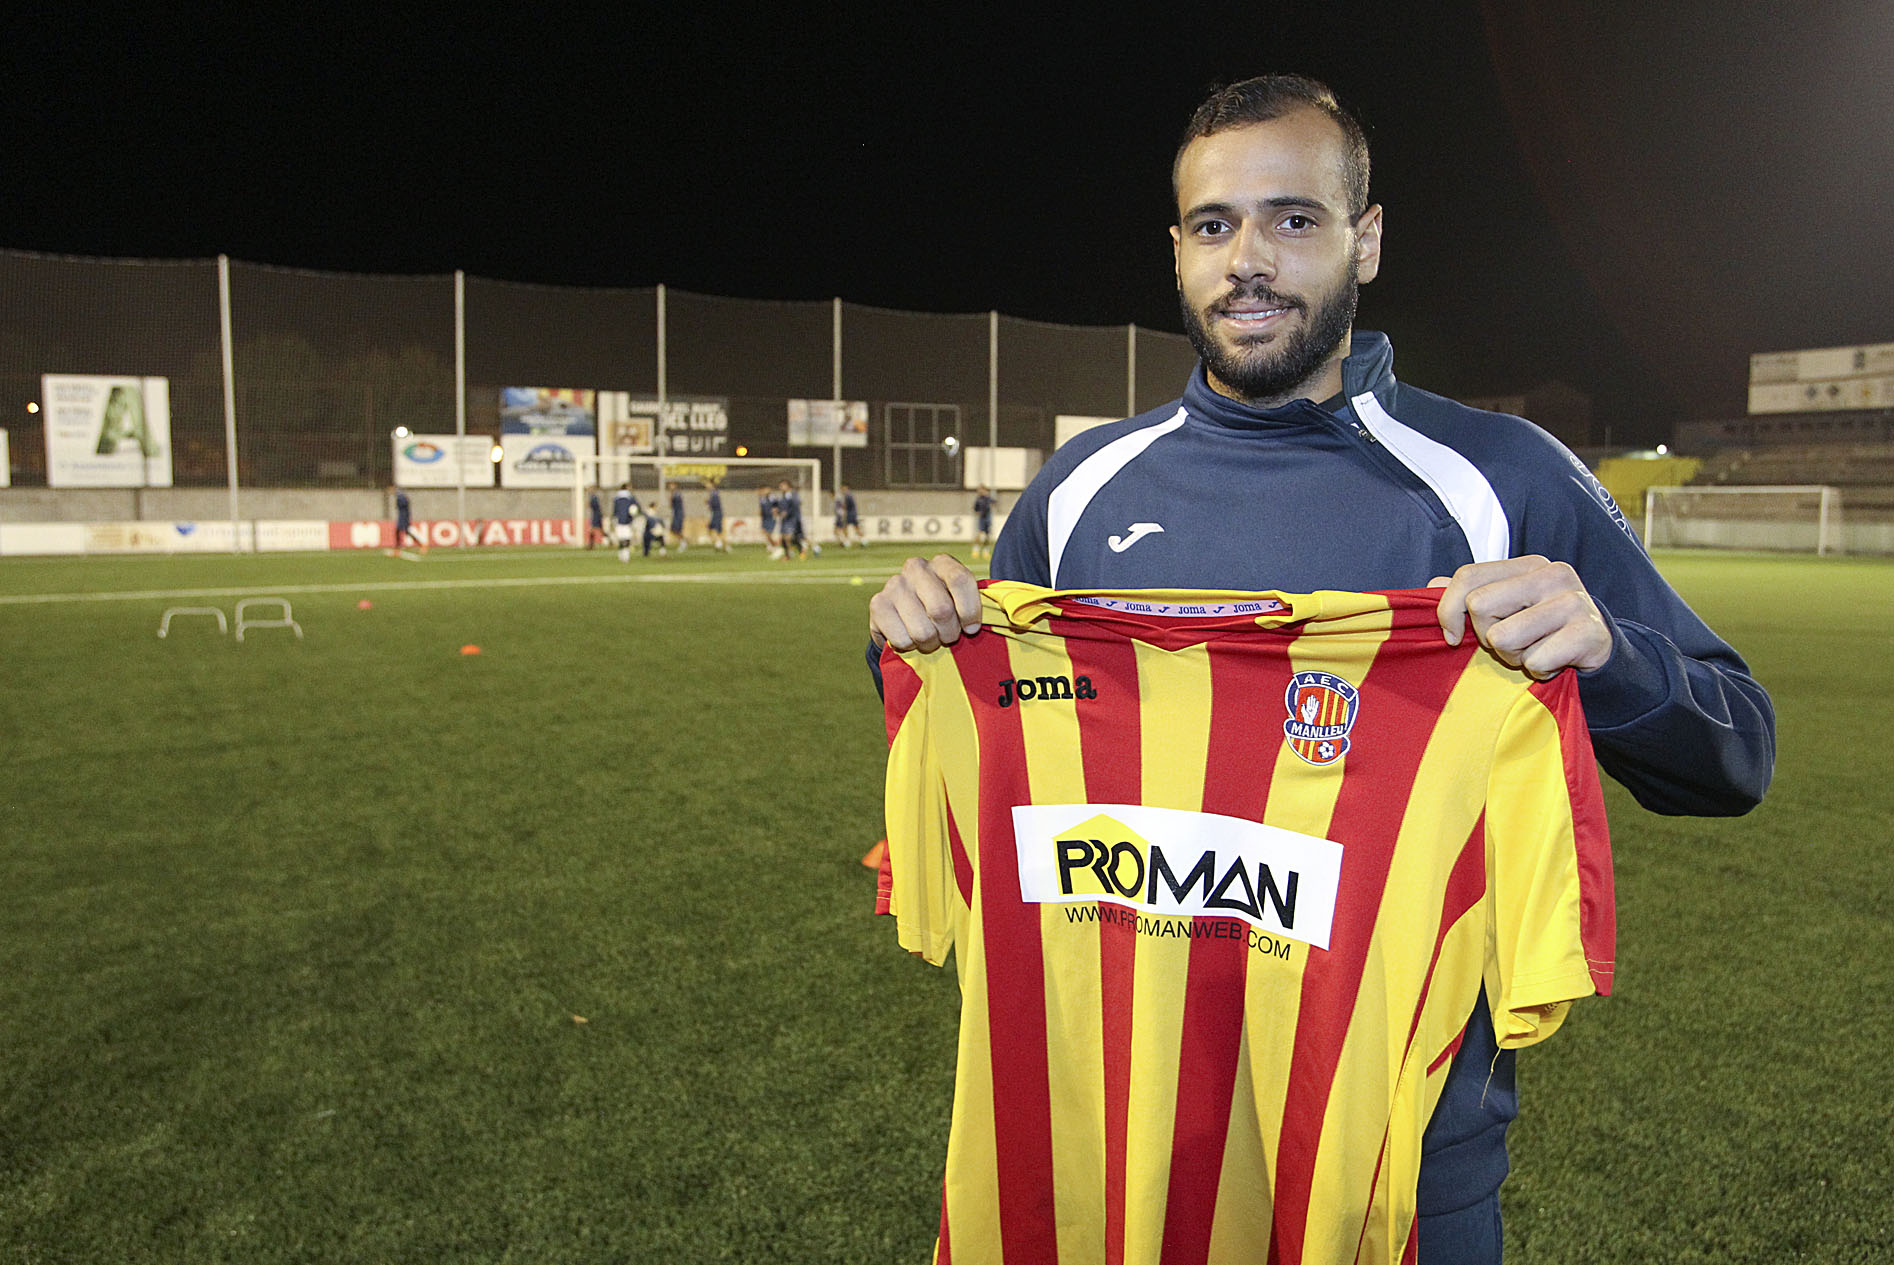 El nou jugador ja podria debutar aquest diumenge a casa contra el Sant Andreu